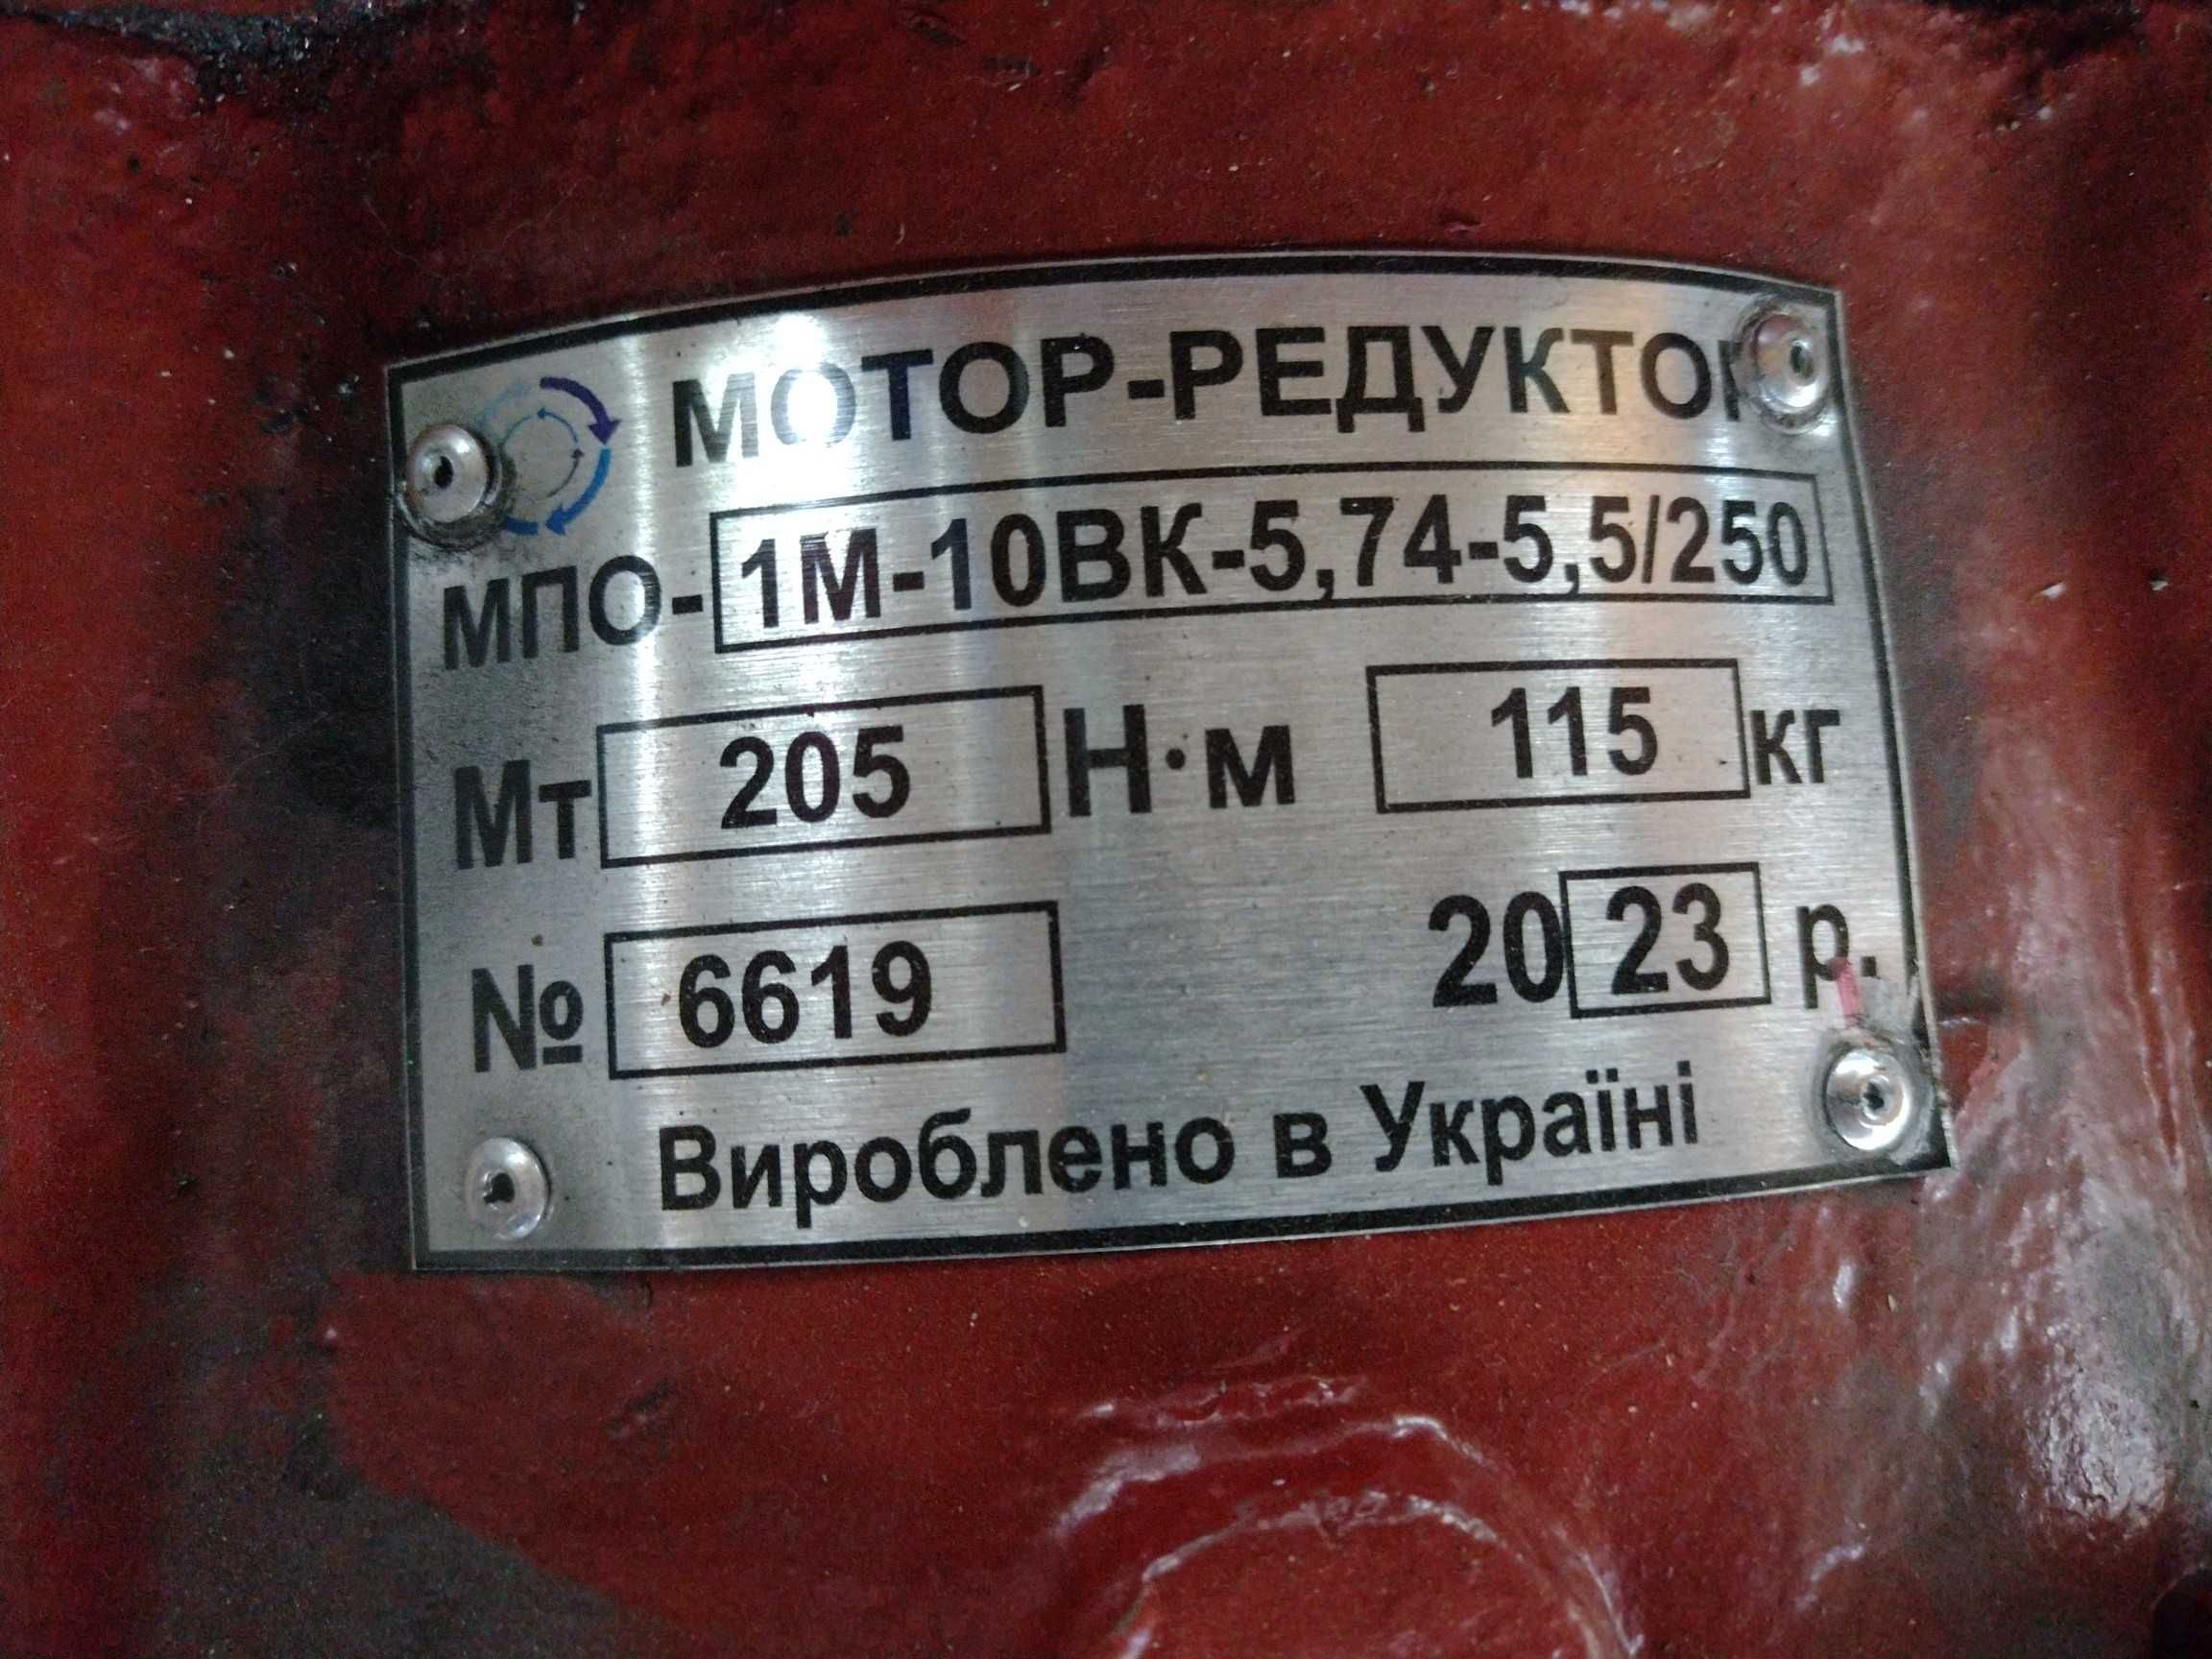 Мотор-редуктор МПО1М-10ВК-5,74-5,5/250